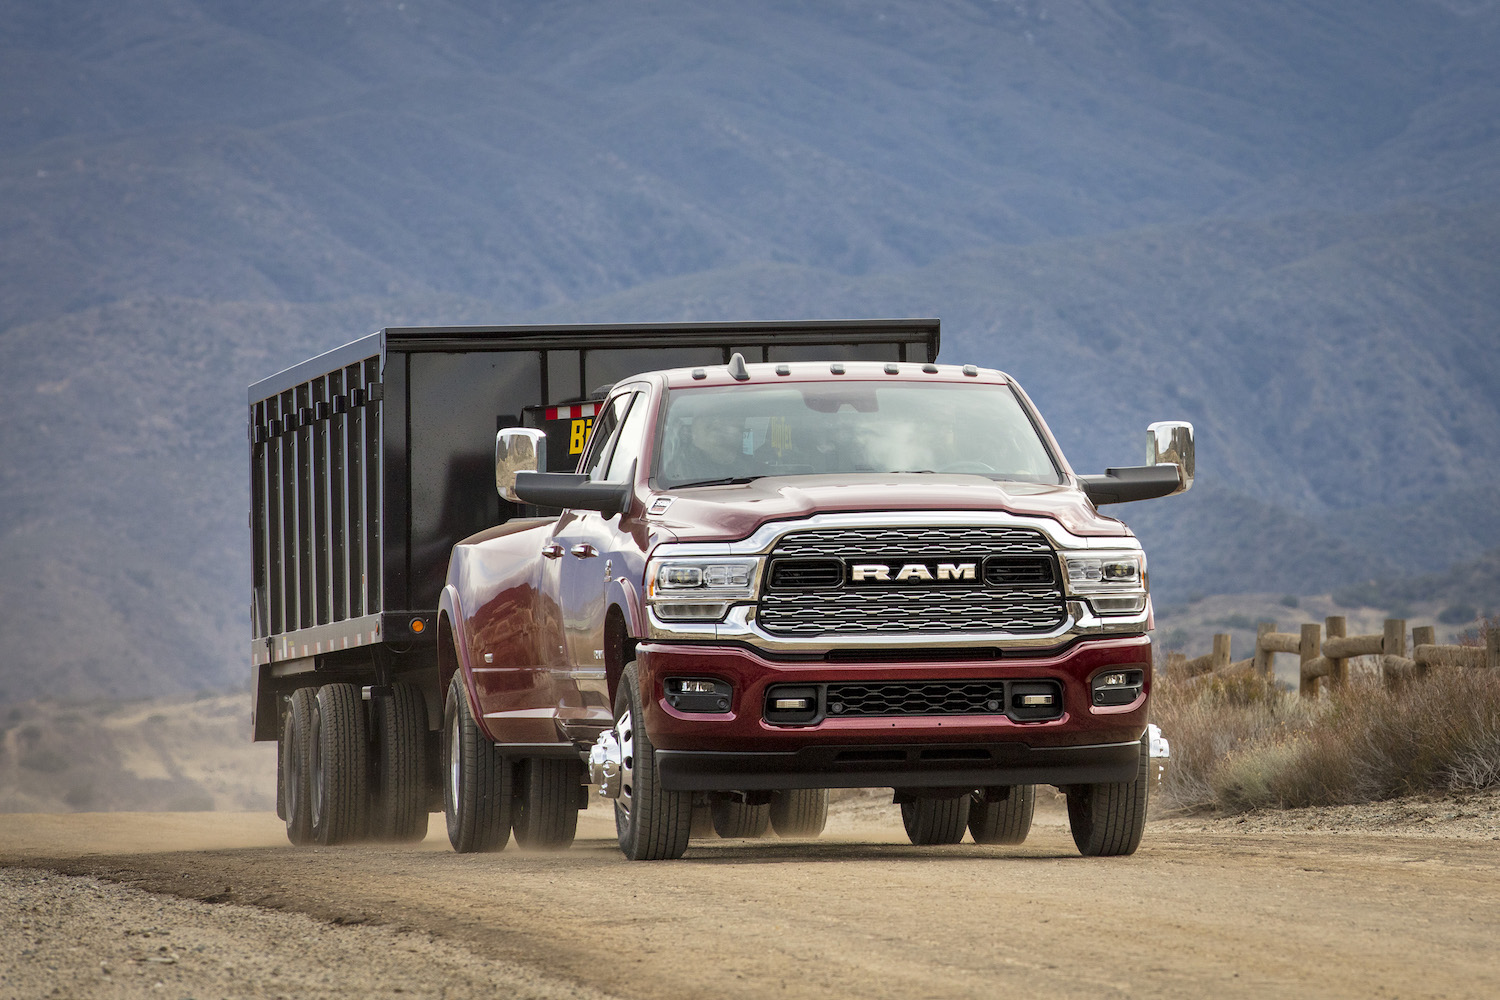 Ram 3500 heavy-duty truck towing a trailer through the desert.